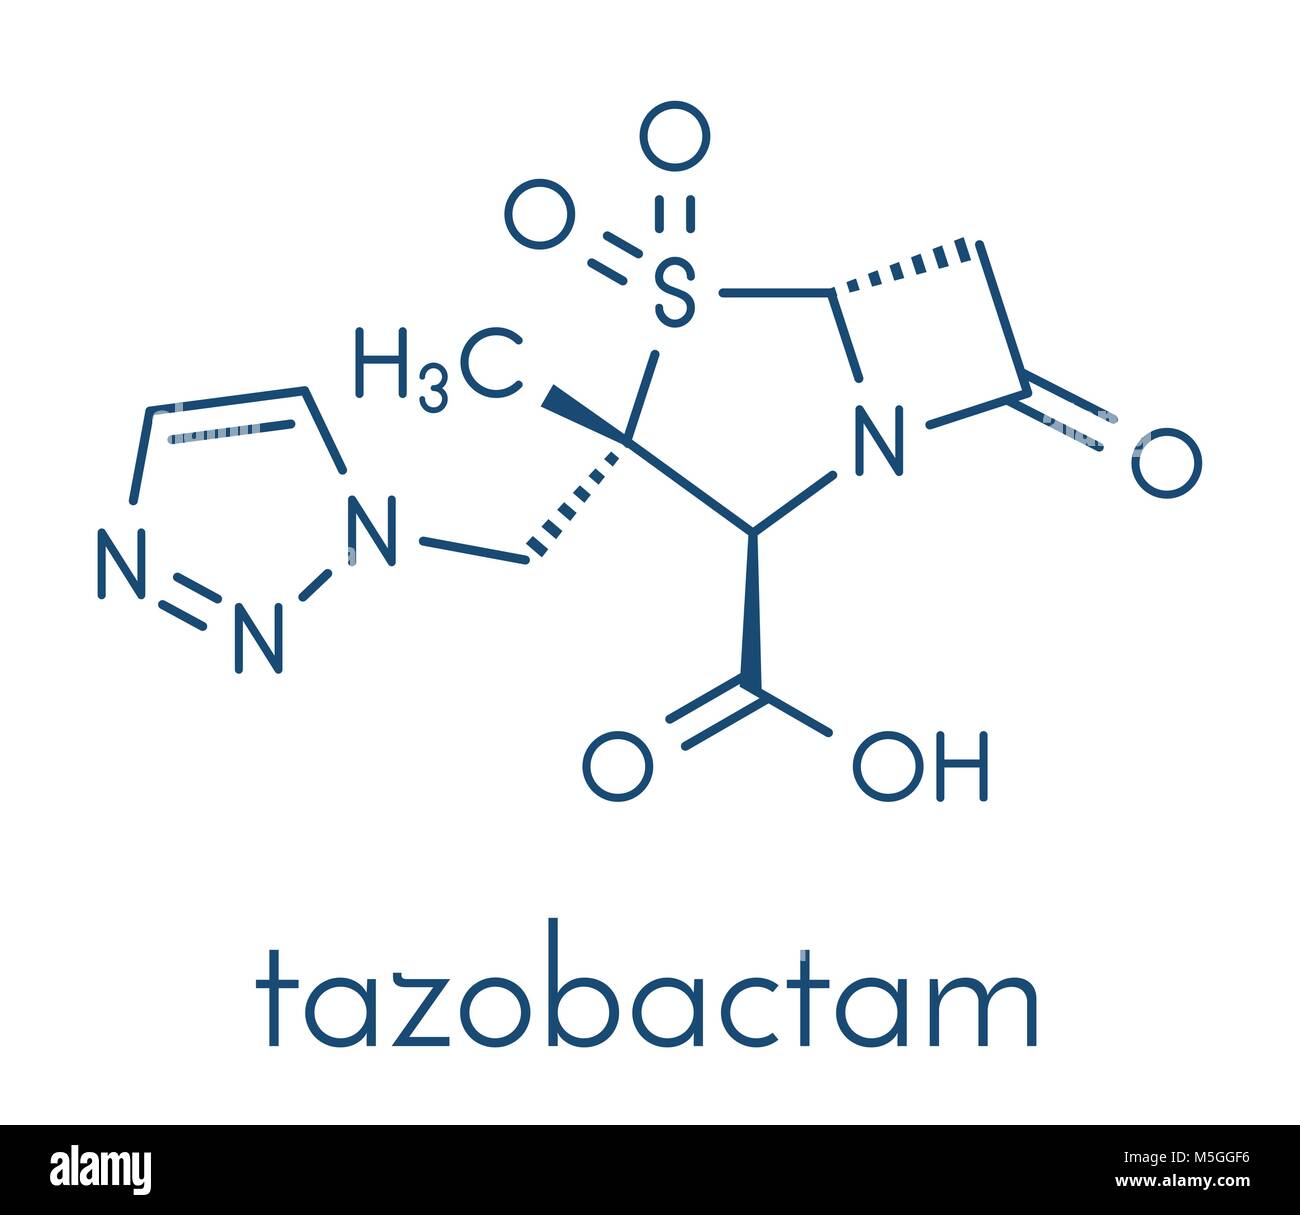 Tazobactam molécule pharmaceutique. Inhibiteur des bêta-lactamases bactériennes enzymes. Formule topologique. Illustration de Vecteur